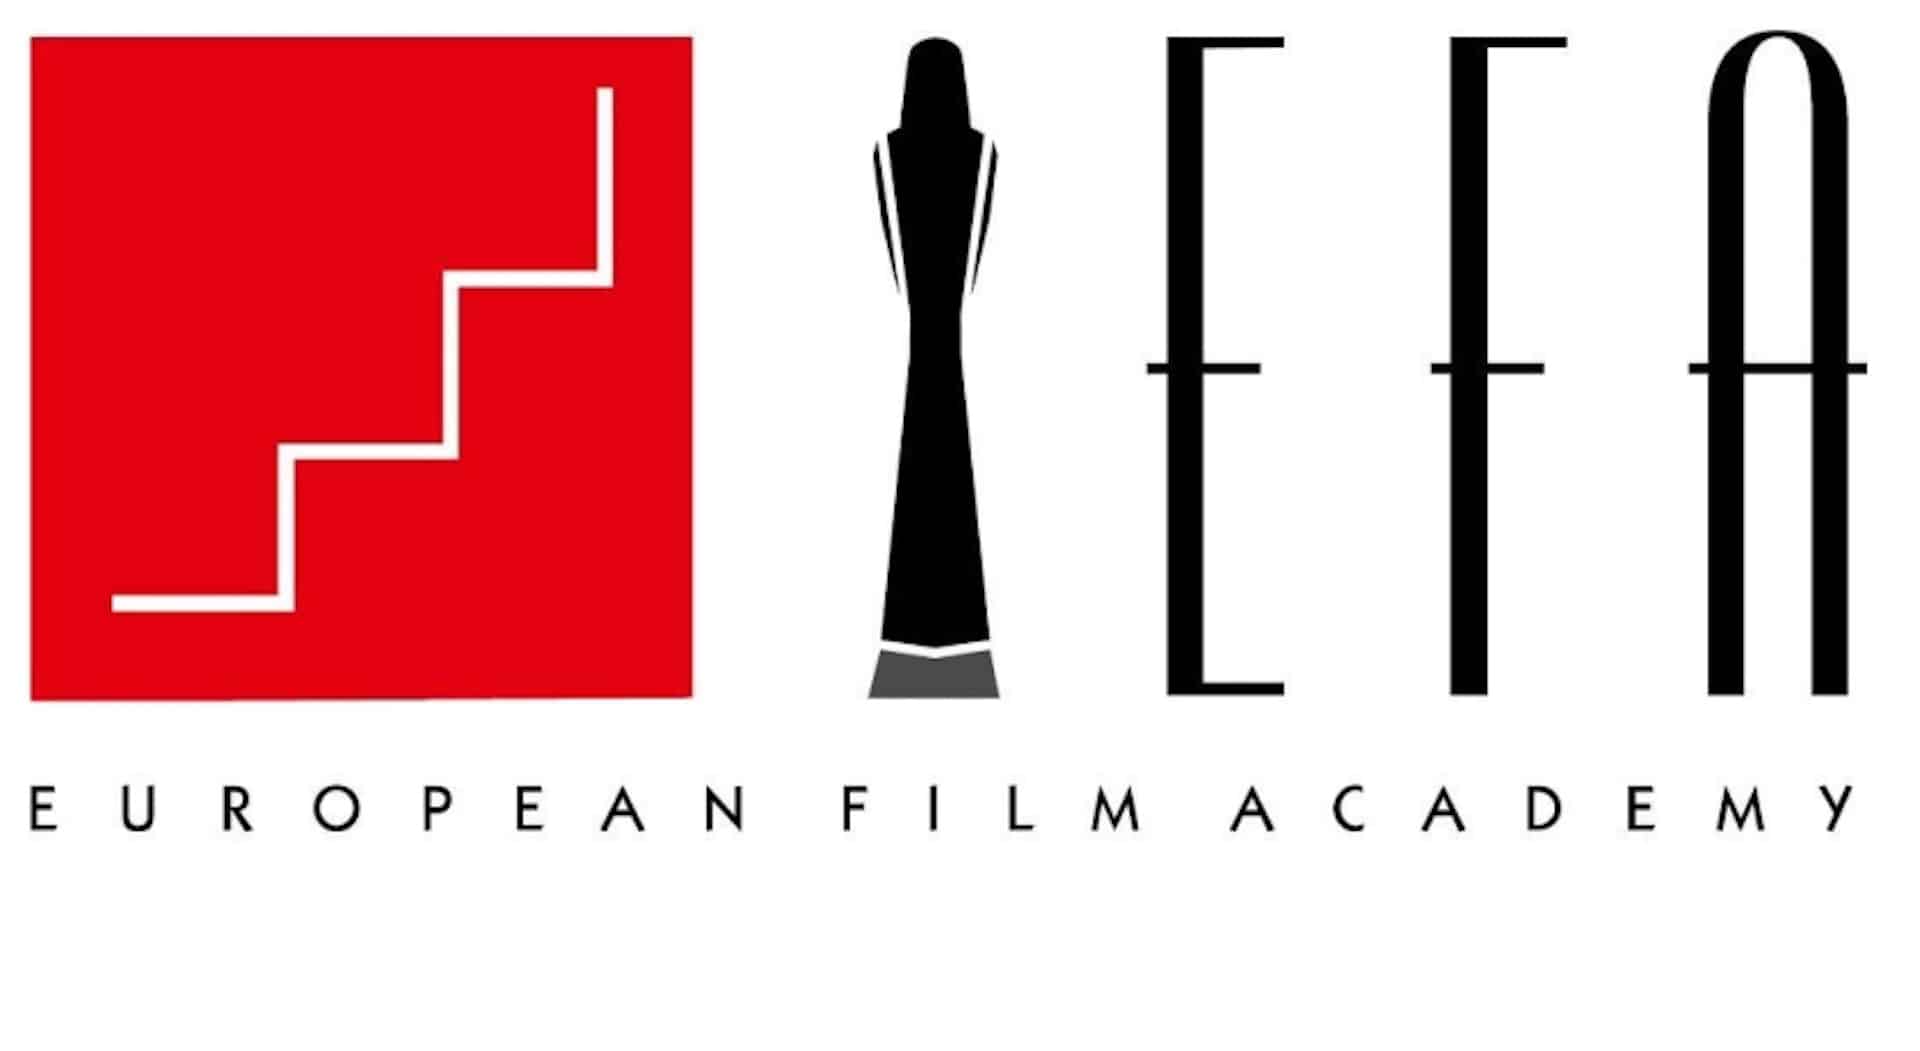 L'European Film Academy condanna fermamente la guerra e si unisce all’Ukrainian Film Academy nel boicottaggio dei film russi